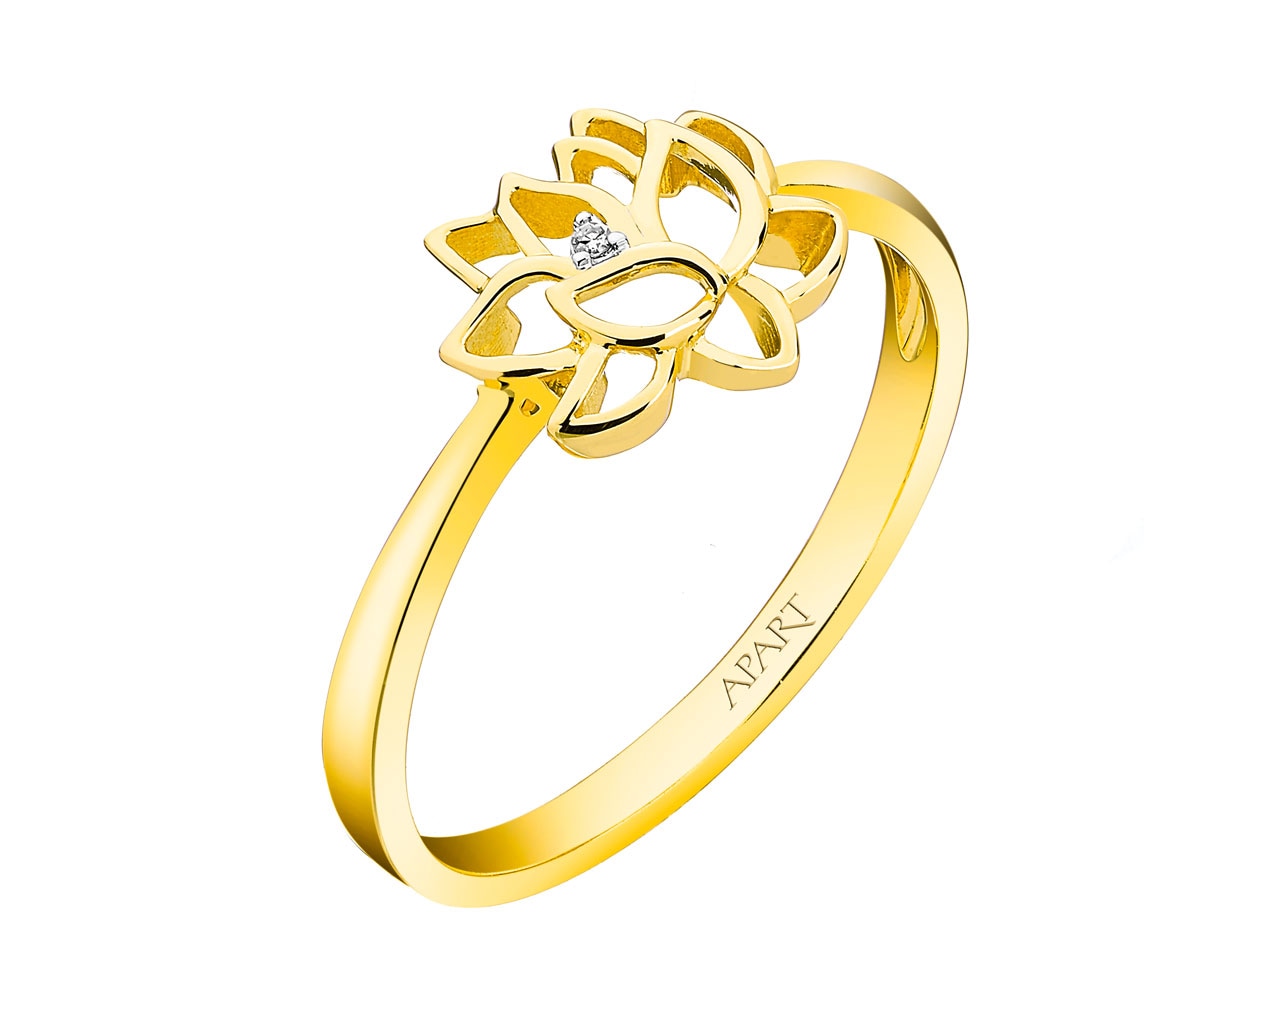 Pierścionek z żółtego złota z diamentem - kwiat lotosu 0,004 ct - próba 375